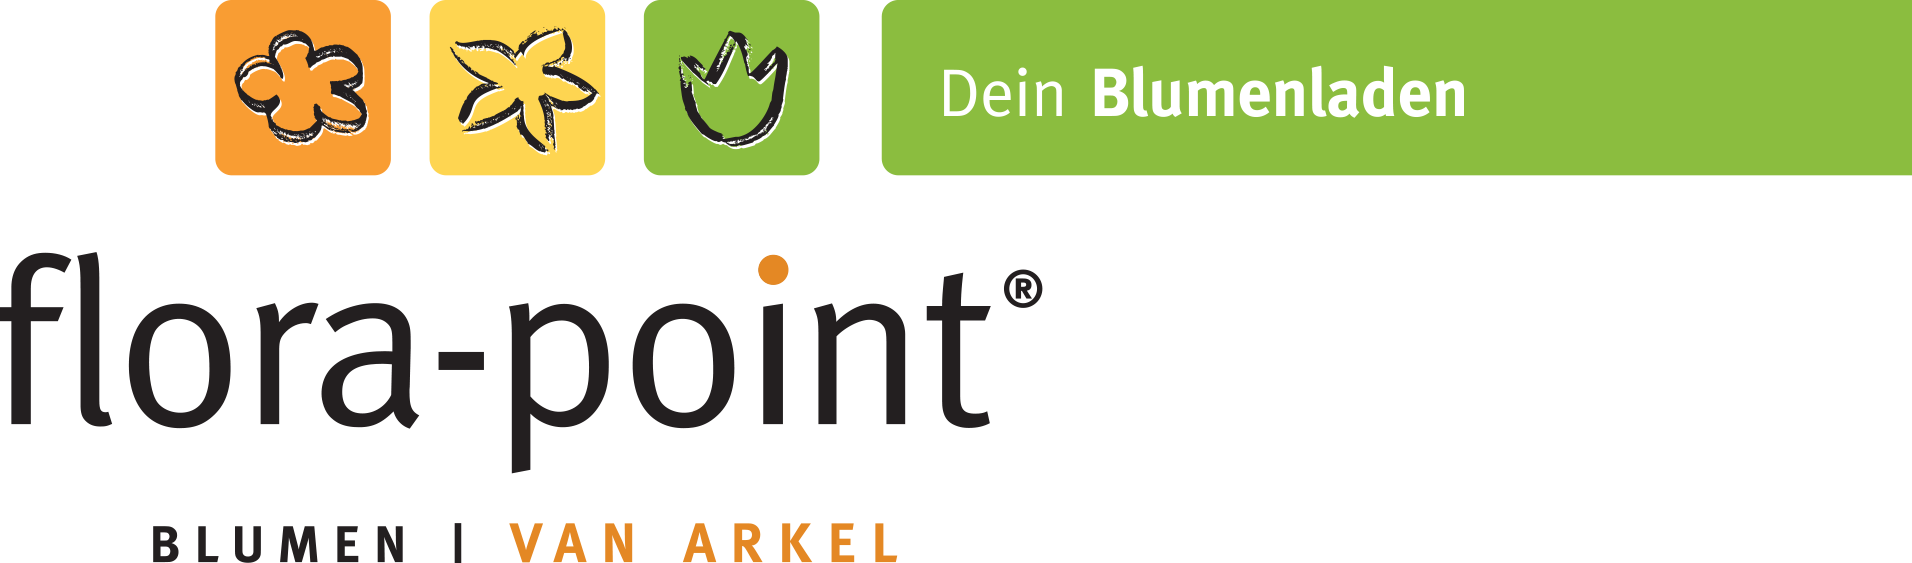 Bild 1 flora-point Blumenshop GmbH in Schwerte